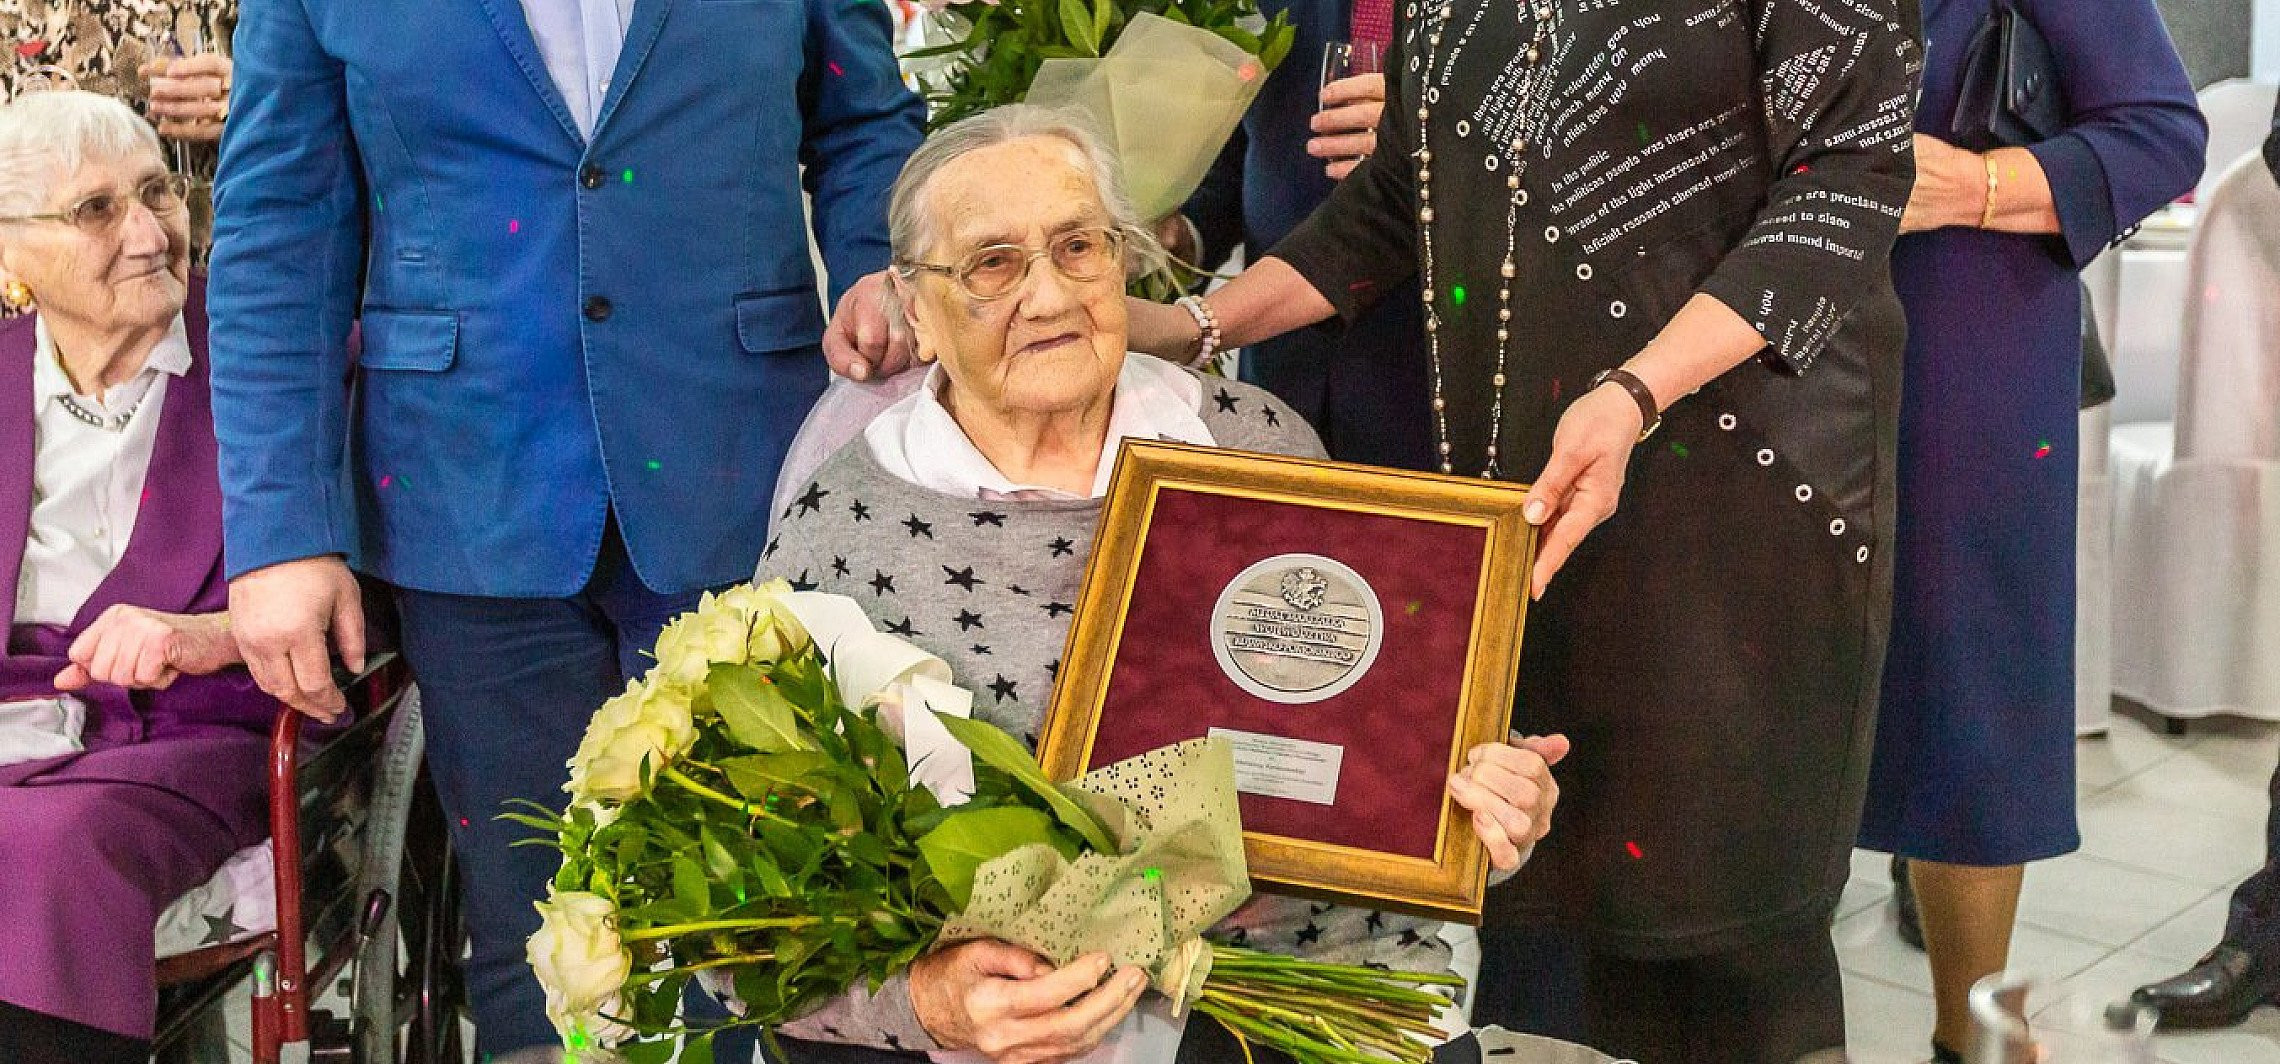 Janikowo - Kolejna stulatka z medalem Unitas Durat